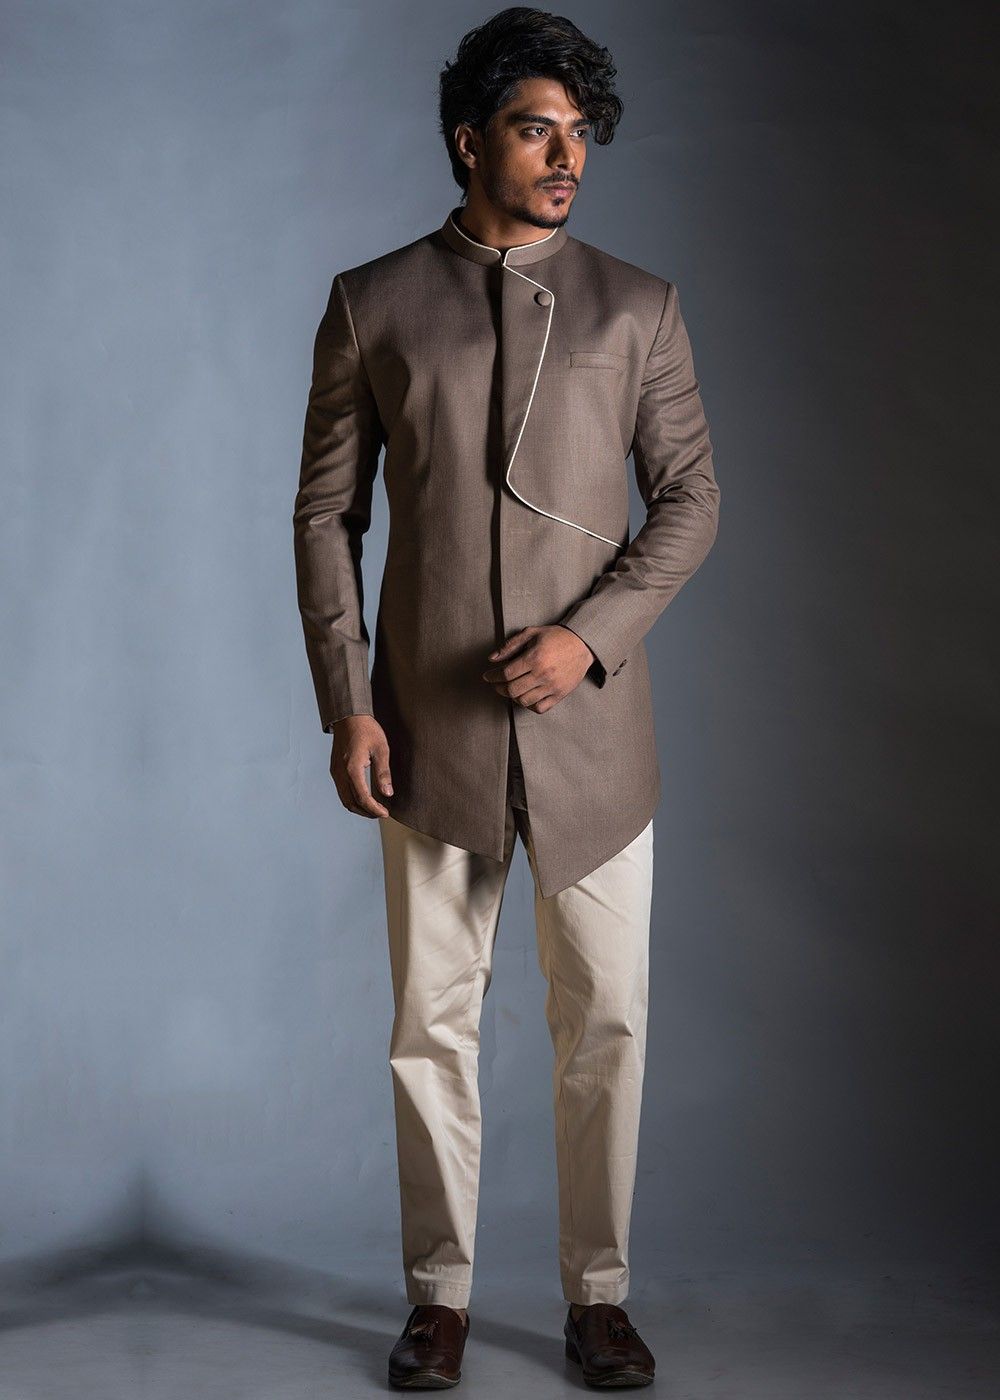 Buy White Jodhpuri Coat Pant Suit Sherwani for Men Boys for Online in India   Etsy